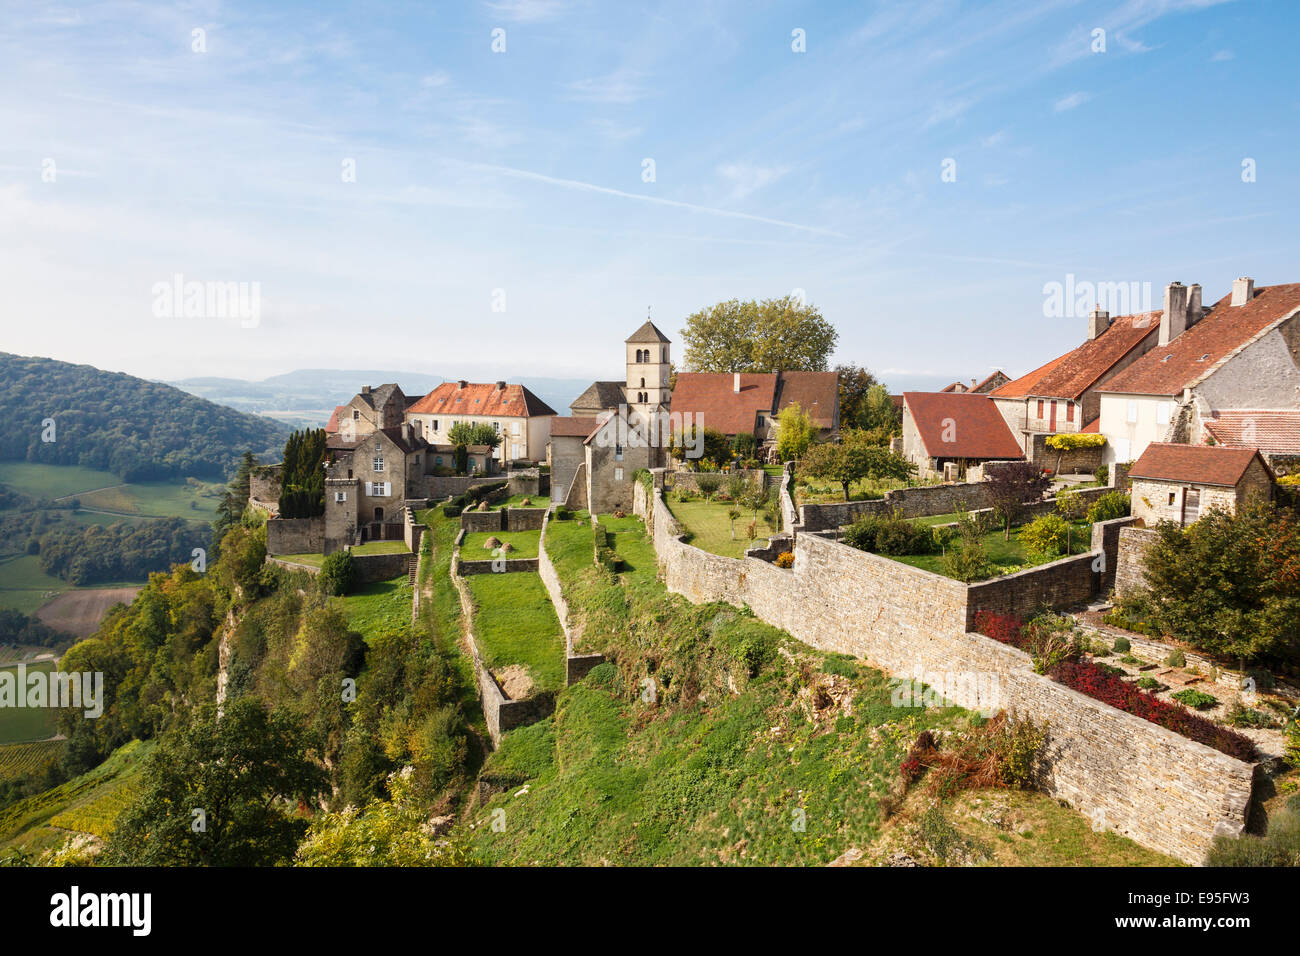 Malerischen französischen Dorf im Weinbaugebiet in ländlichen Landschaft. Chateau Chalon, Jura, Franche, Frankreich. Les Plus Beaux Dörfer de France Stockfoto